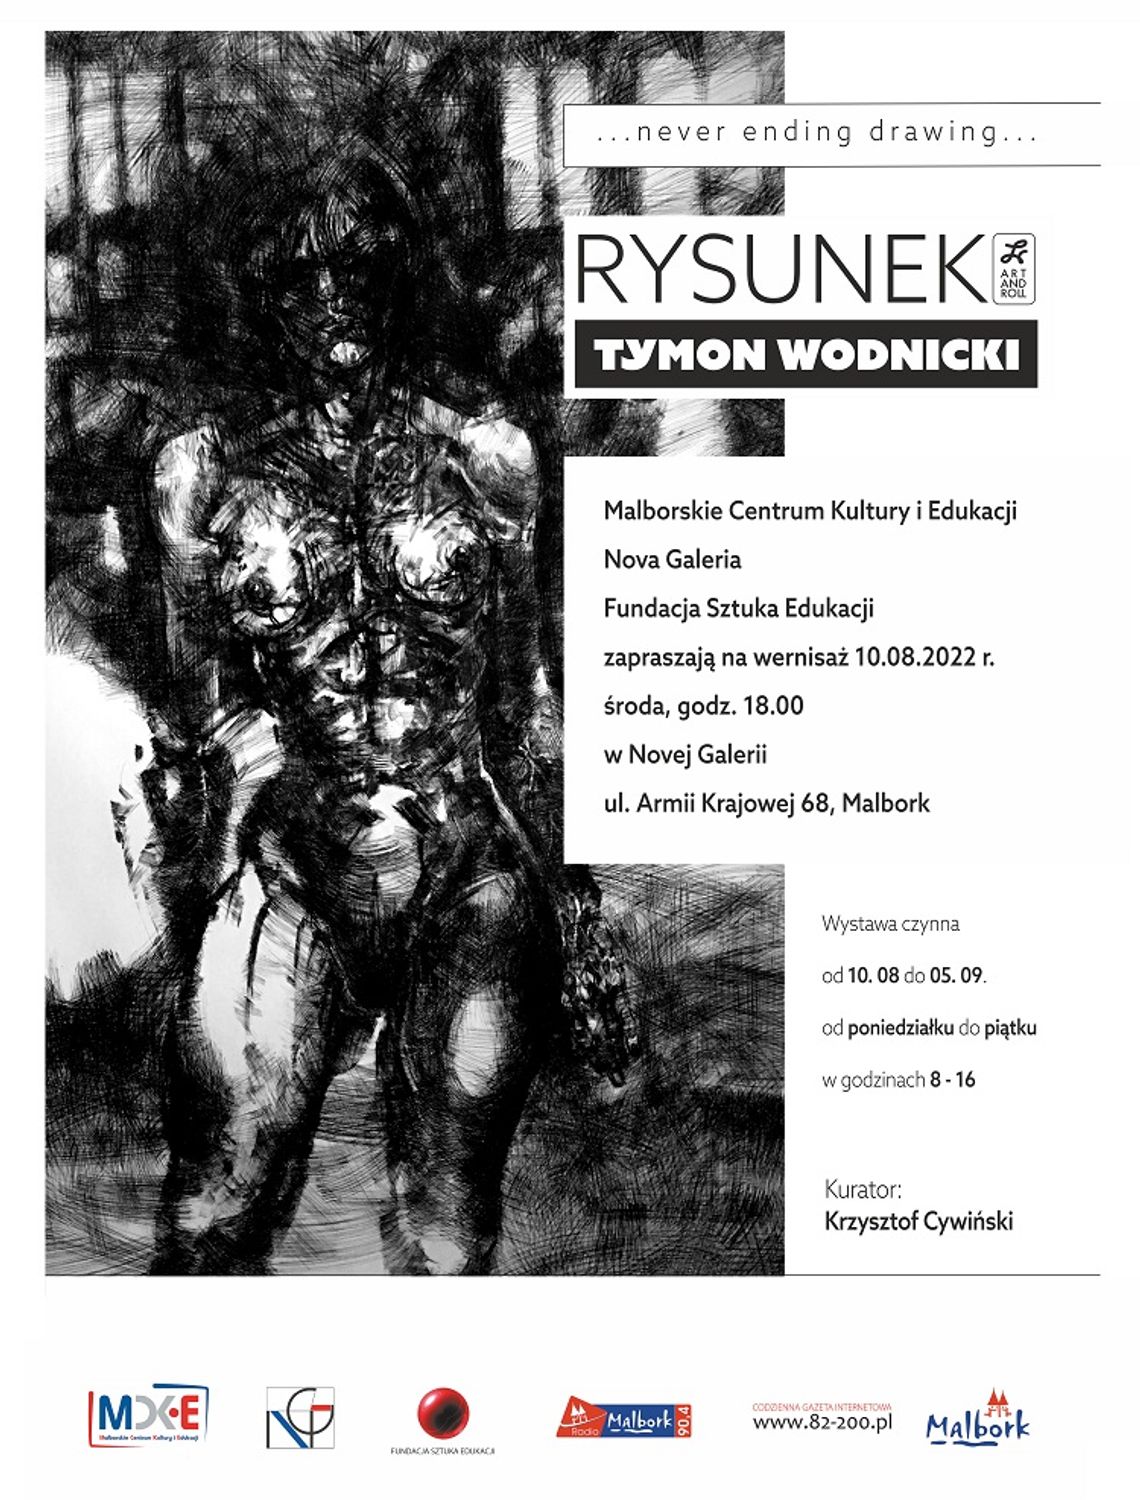 "Rysunek" - wernisaż wystawy Tymona Wodnickiego w malborskiej Galerii Nova.